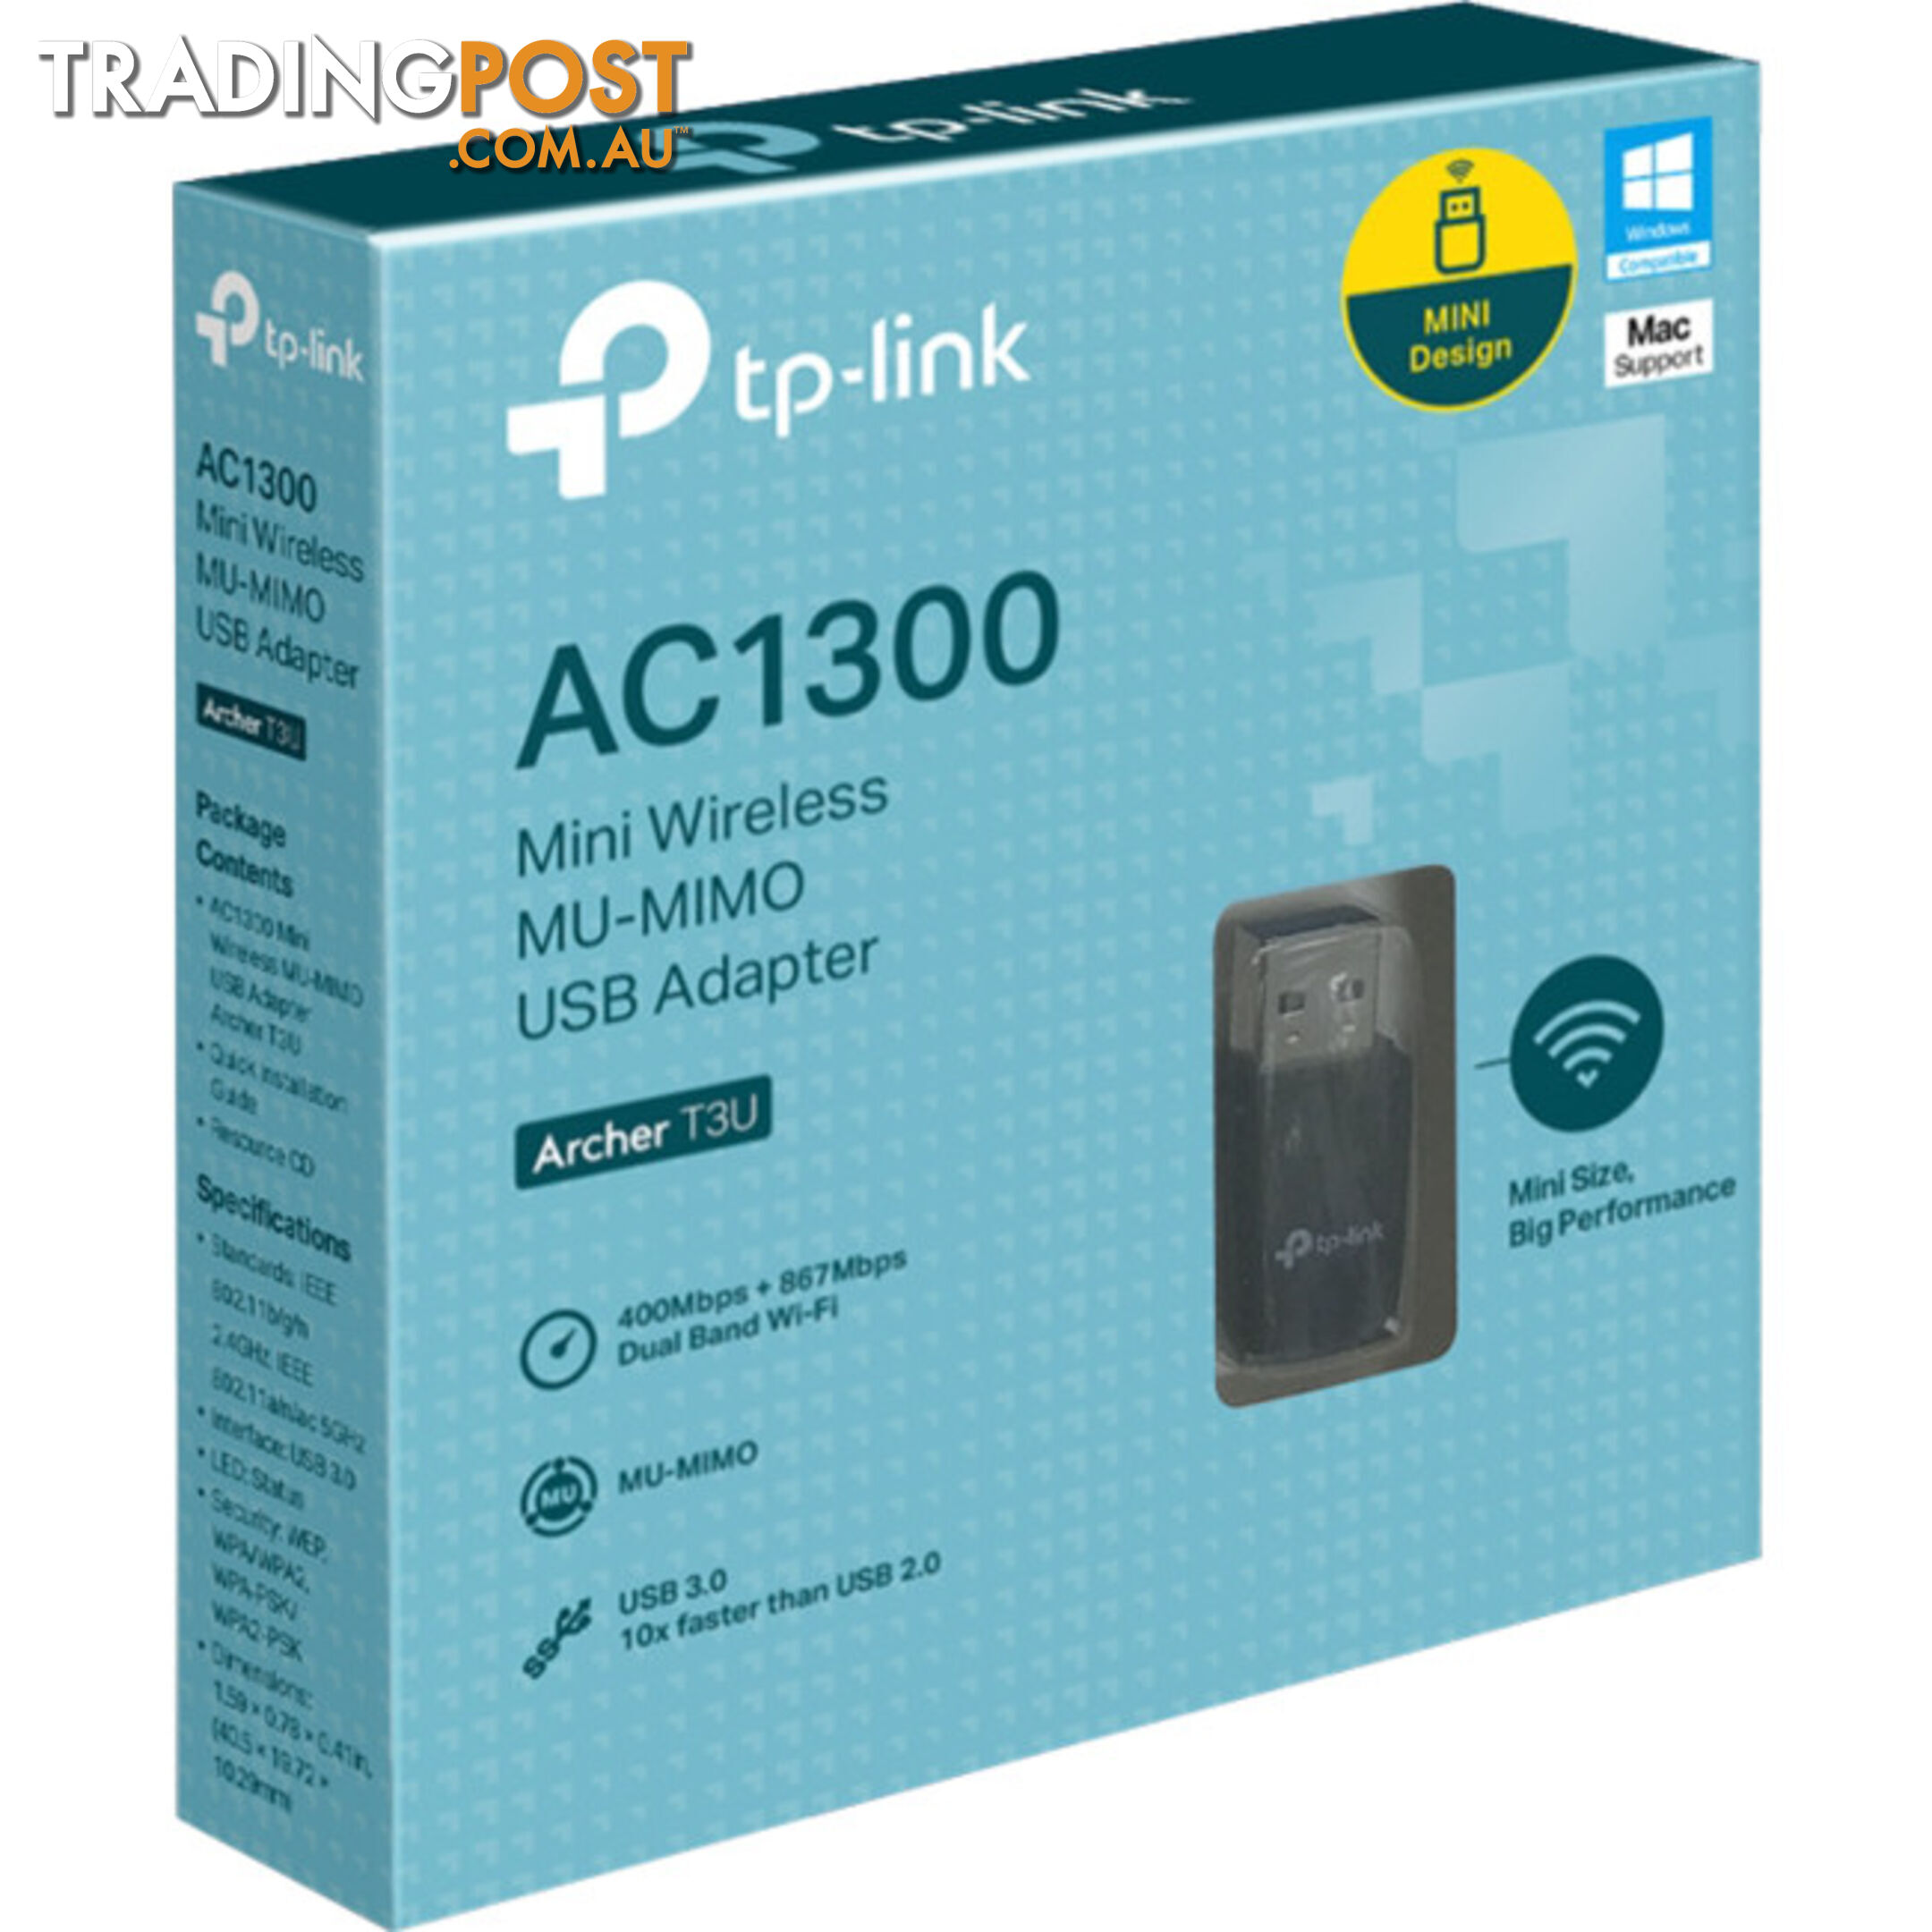 ARCHERT3U AC1300 MINI USB WIFI ADAPTER